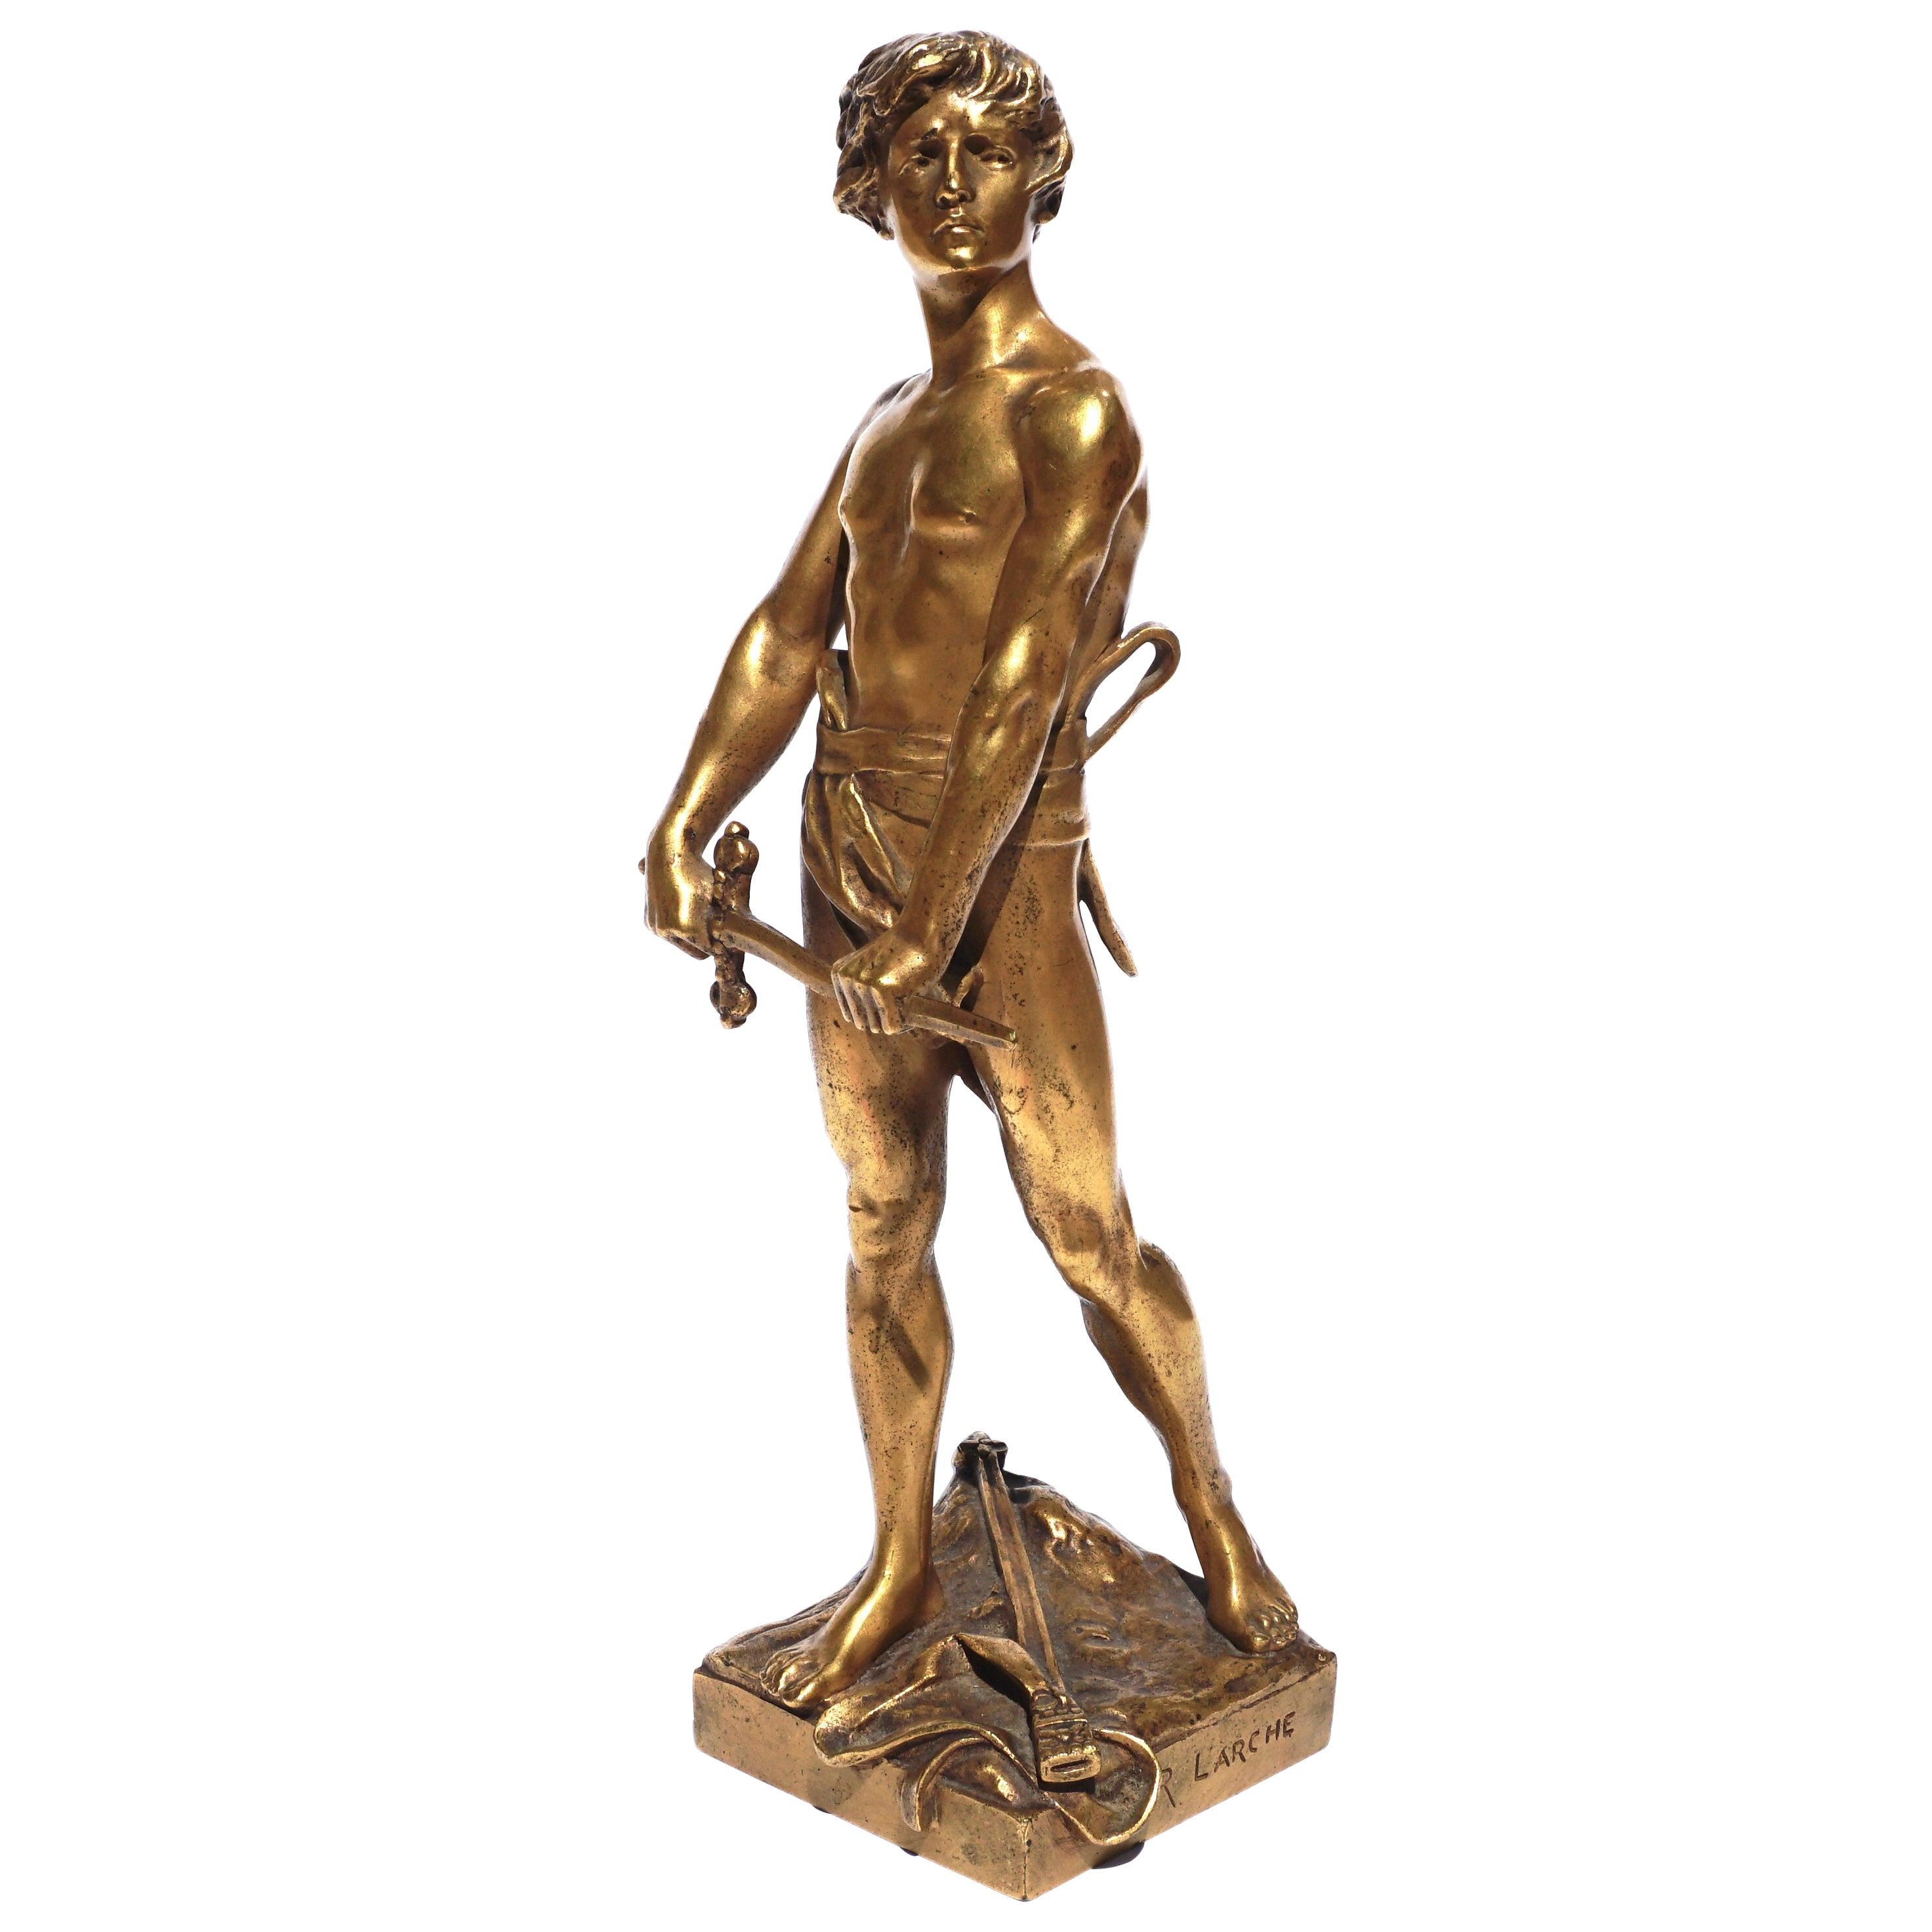 Francois Raoul Larche “Vingt Ans” Gilt Bronze